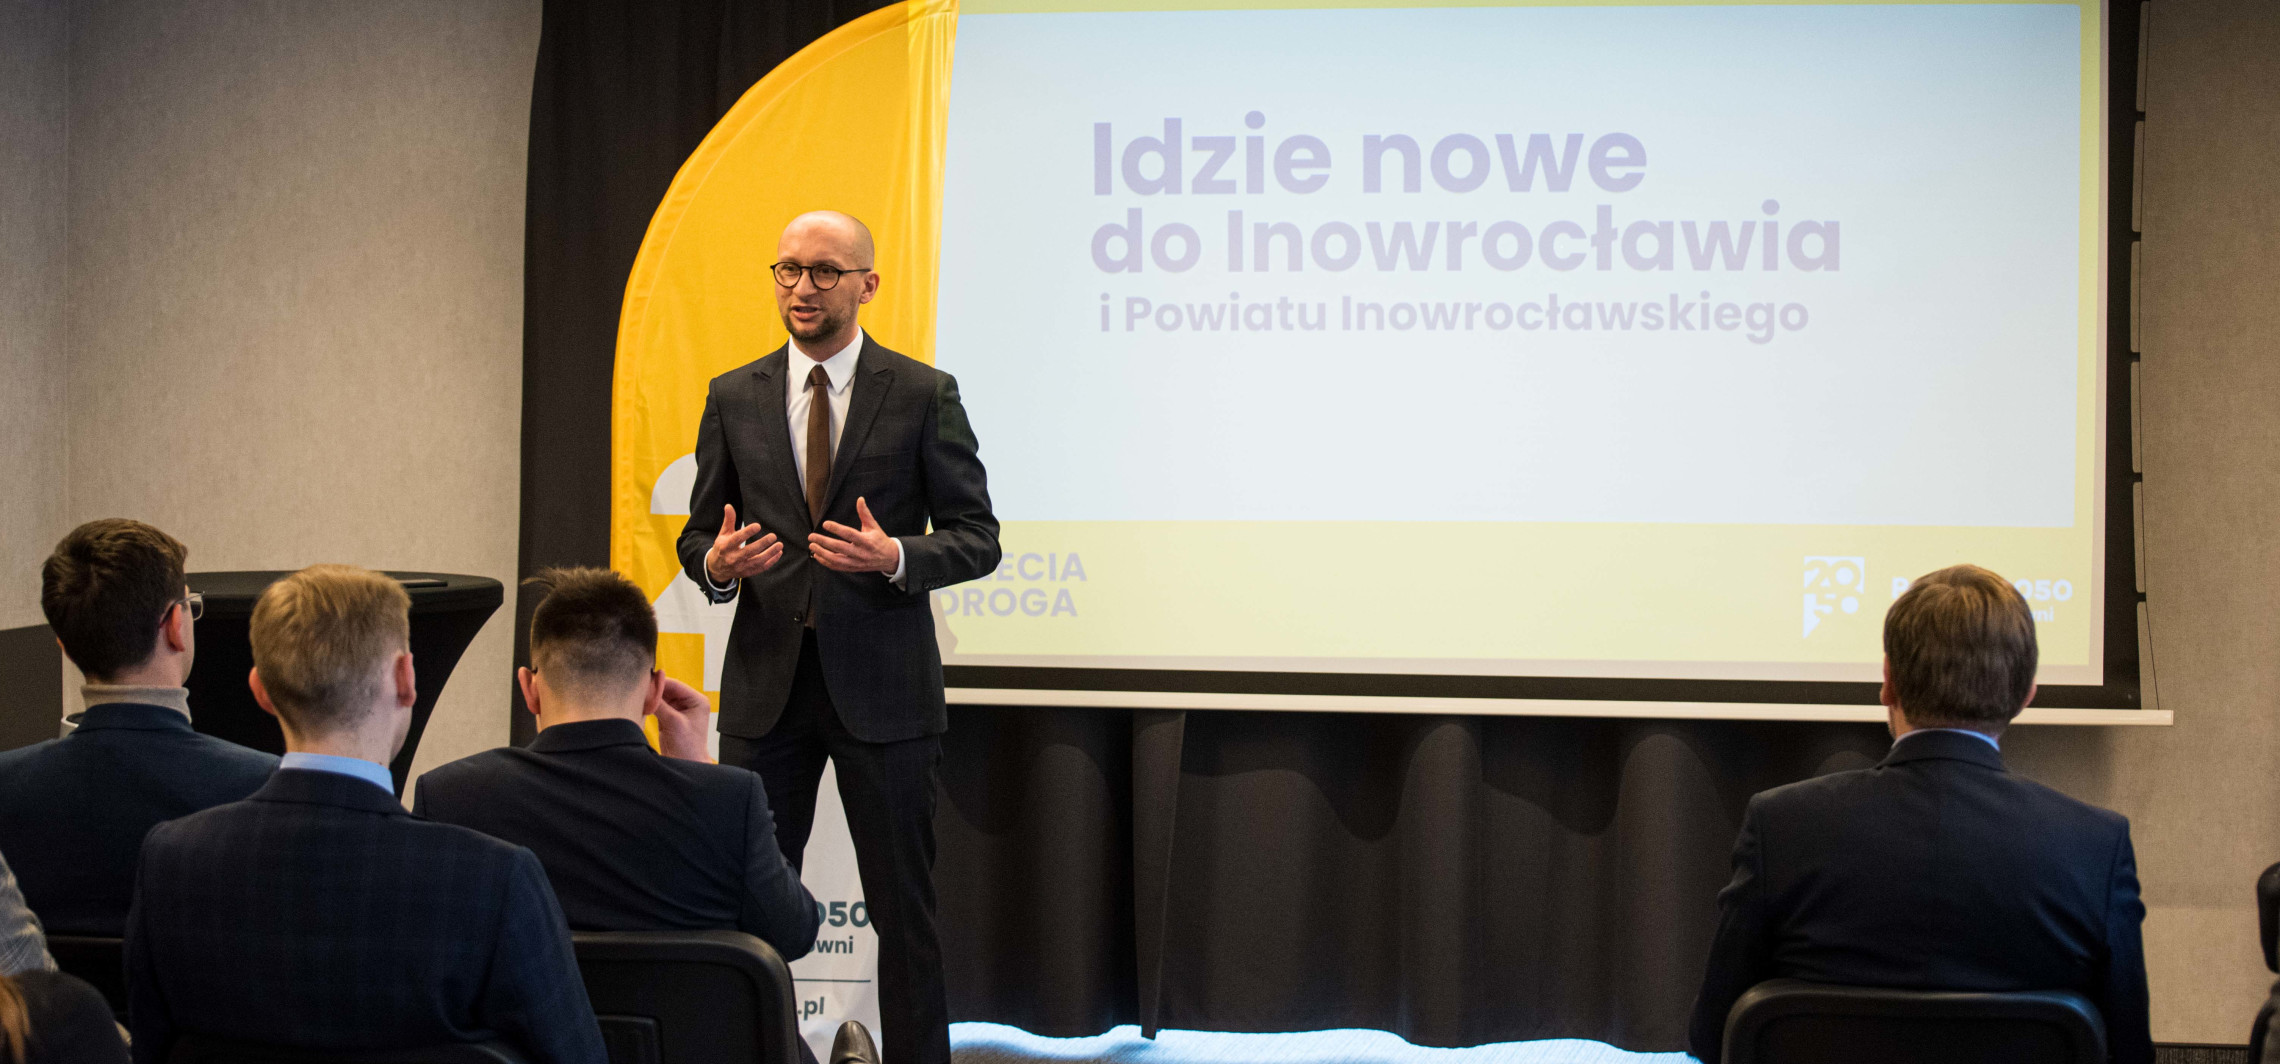 Inowrocław - Trzecia Droga zaprezentowała pięć gwarancji